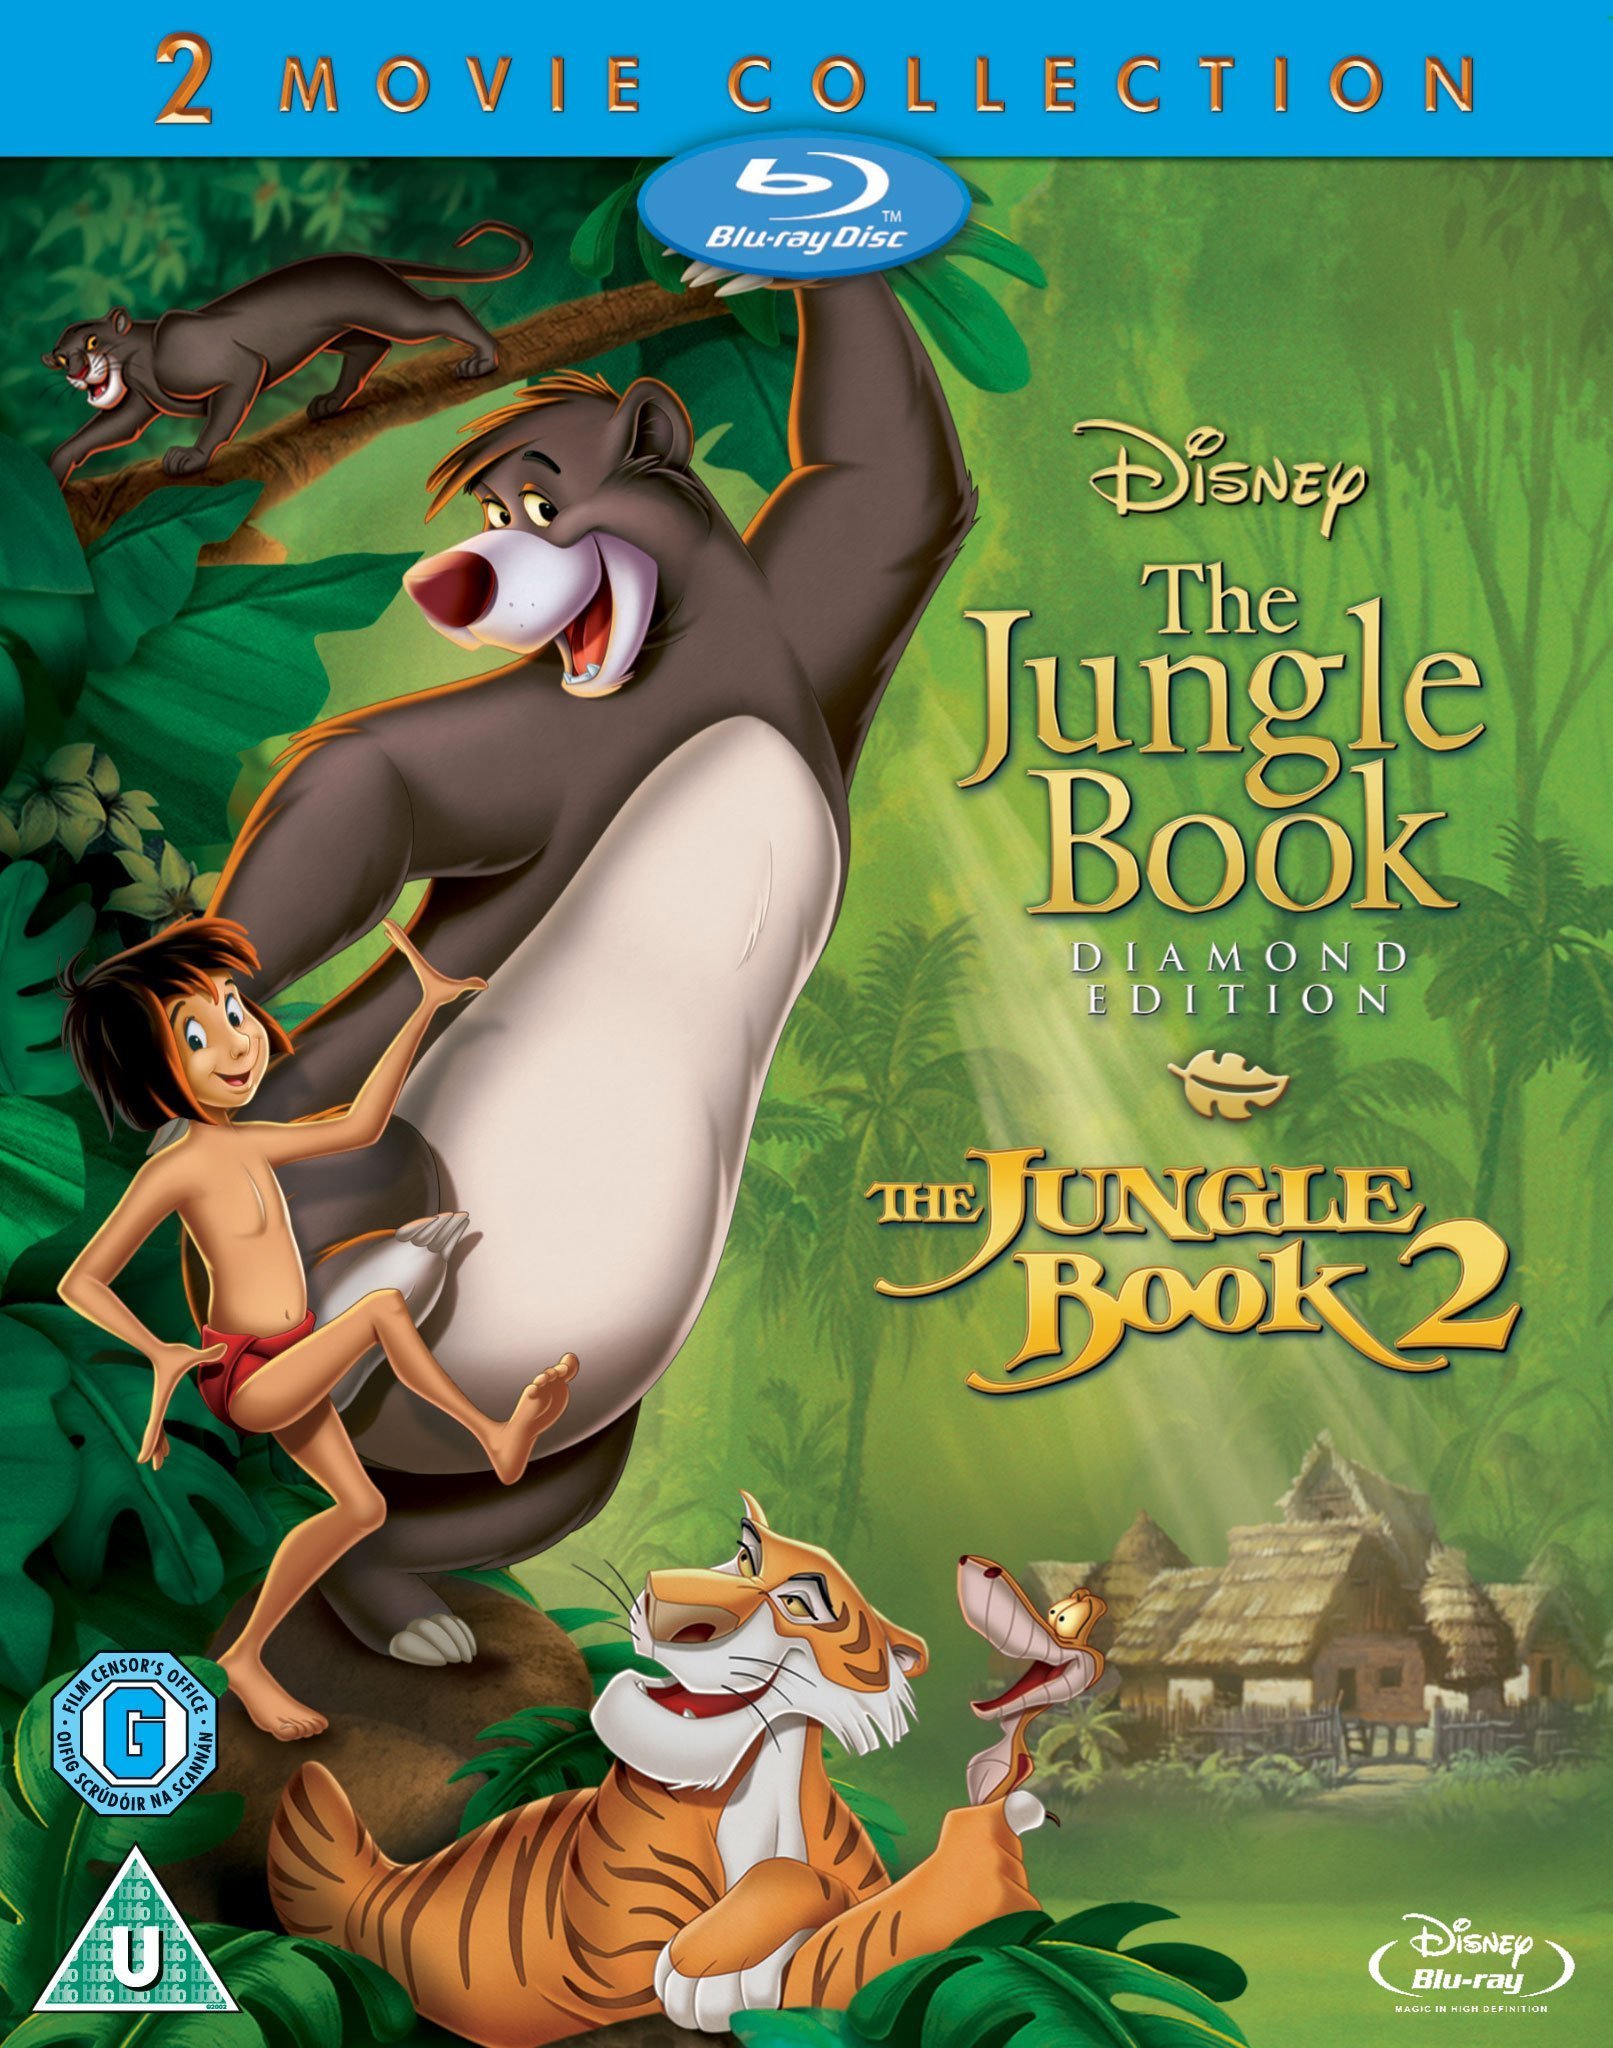 The Jungle Book 2 Movie